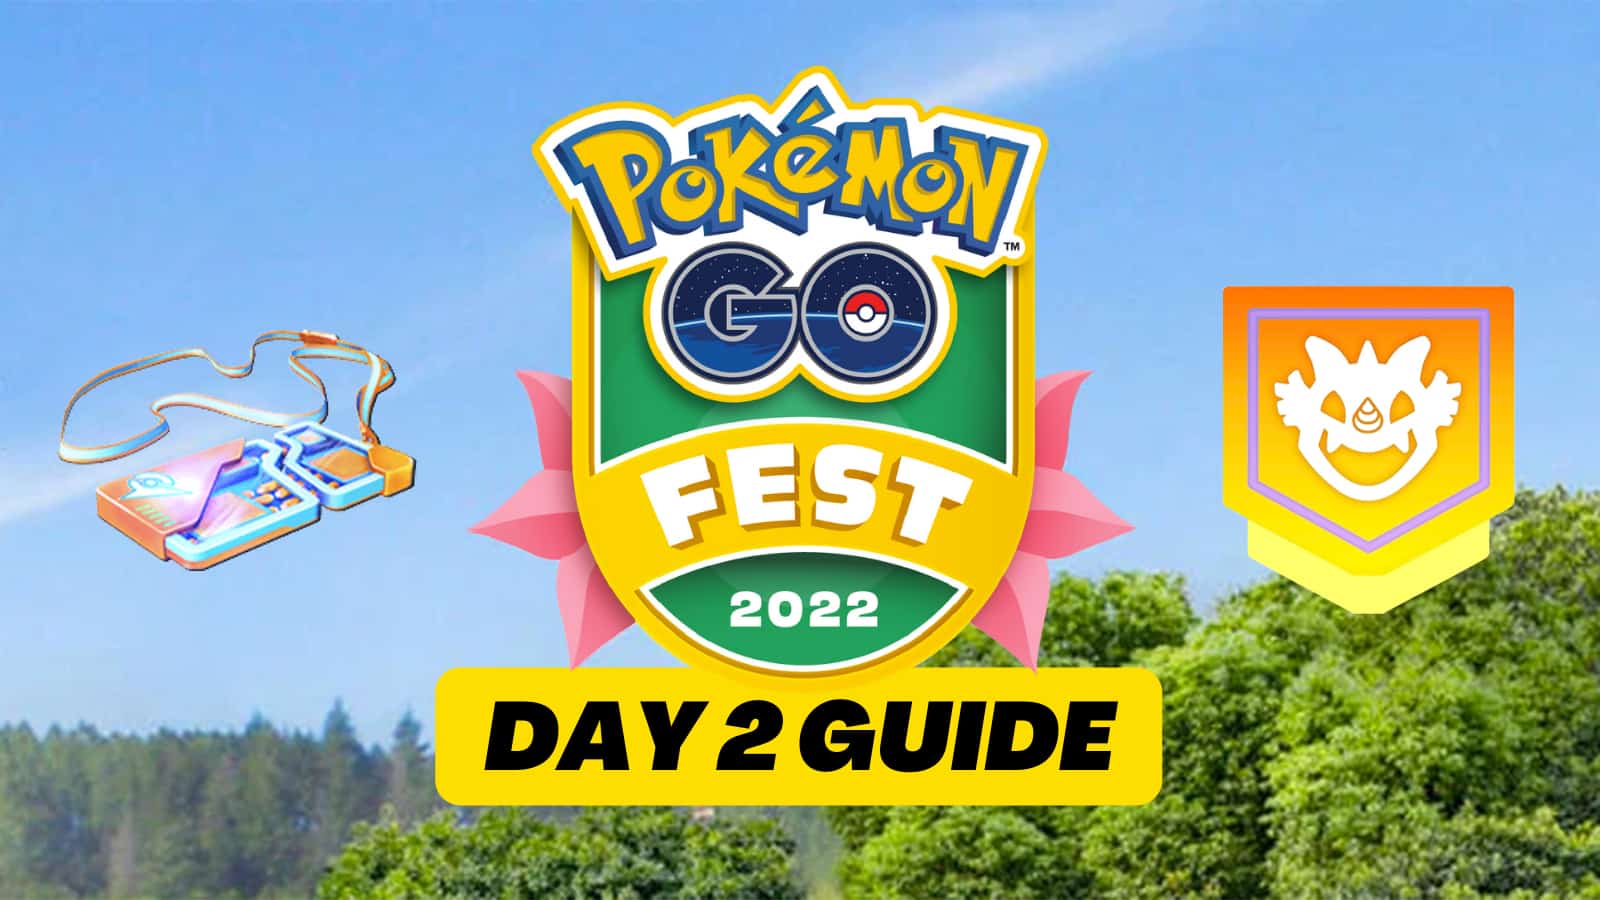 Pokemon Go Fest 2022 Day 2 Guide